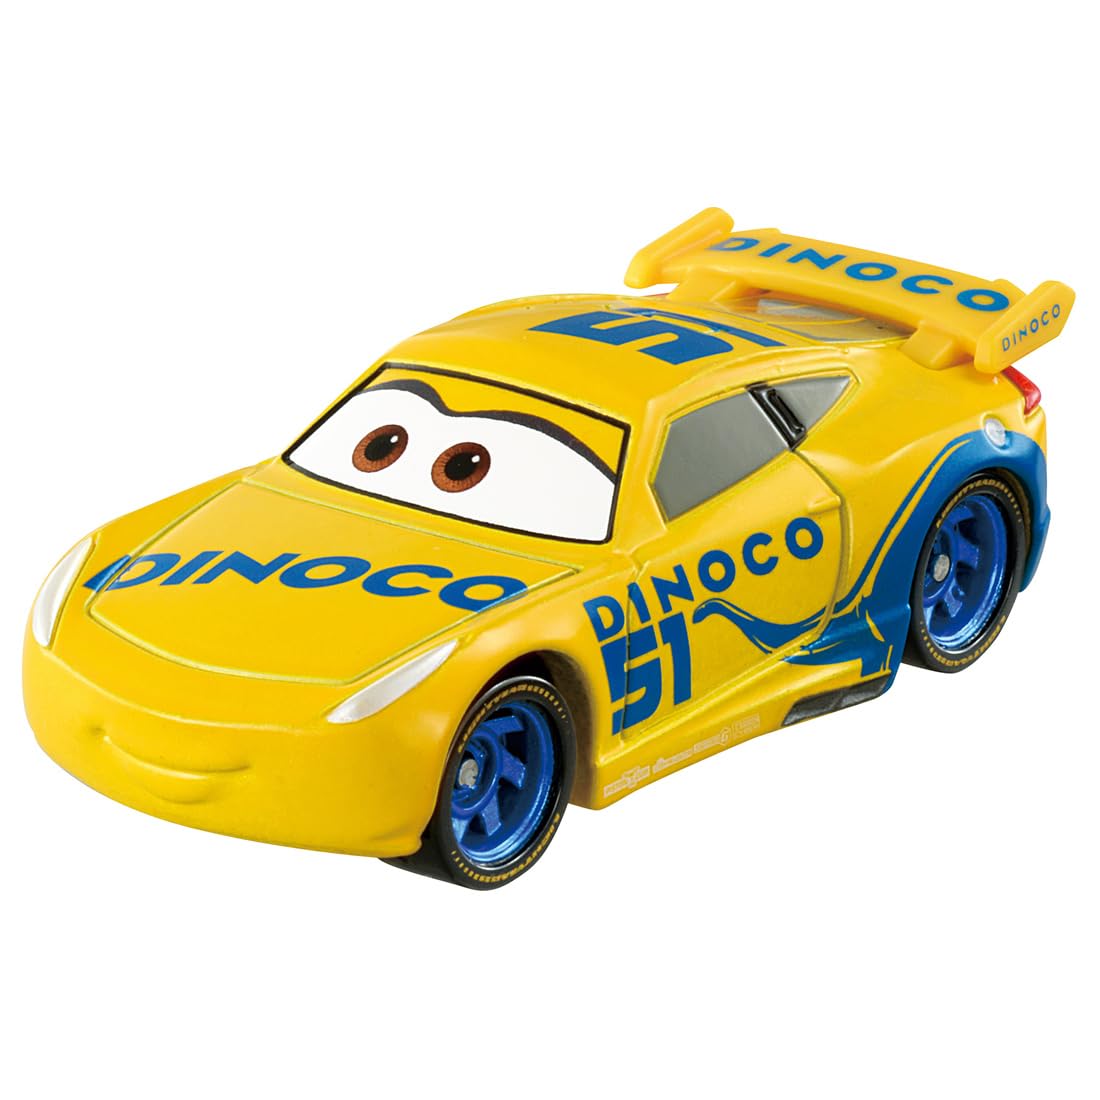 タカラトミー 『 ディズニー カーズ トミカ C-06 クルーズ・ラミレス (DINOCOレーシングタイプ) 』 ミニカー 車 おもちゃ 3歳以上 箱入り 玩具安全基準合格 STマーク認証 TOMICA TAKARA TOMY